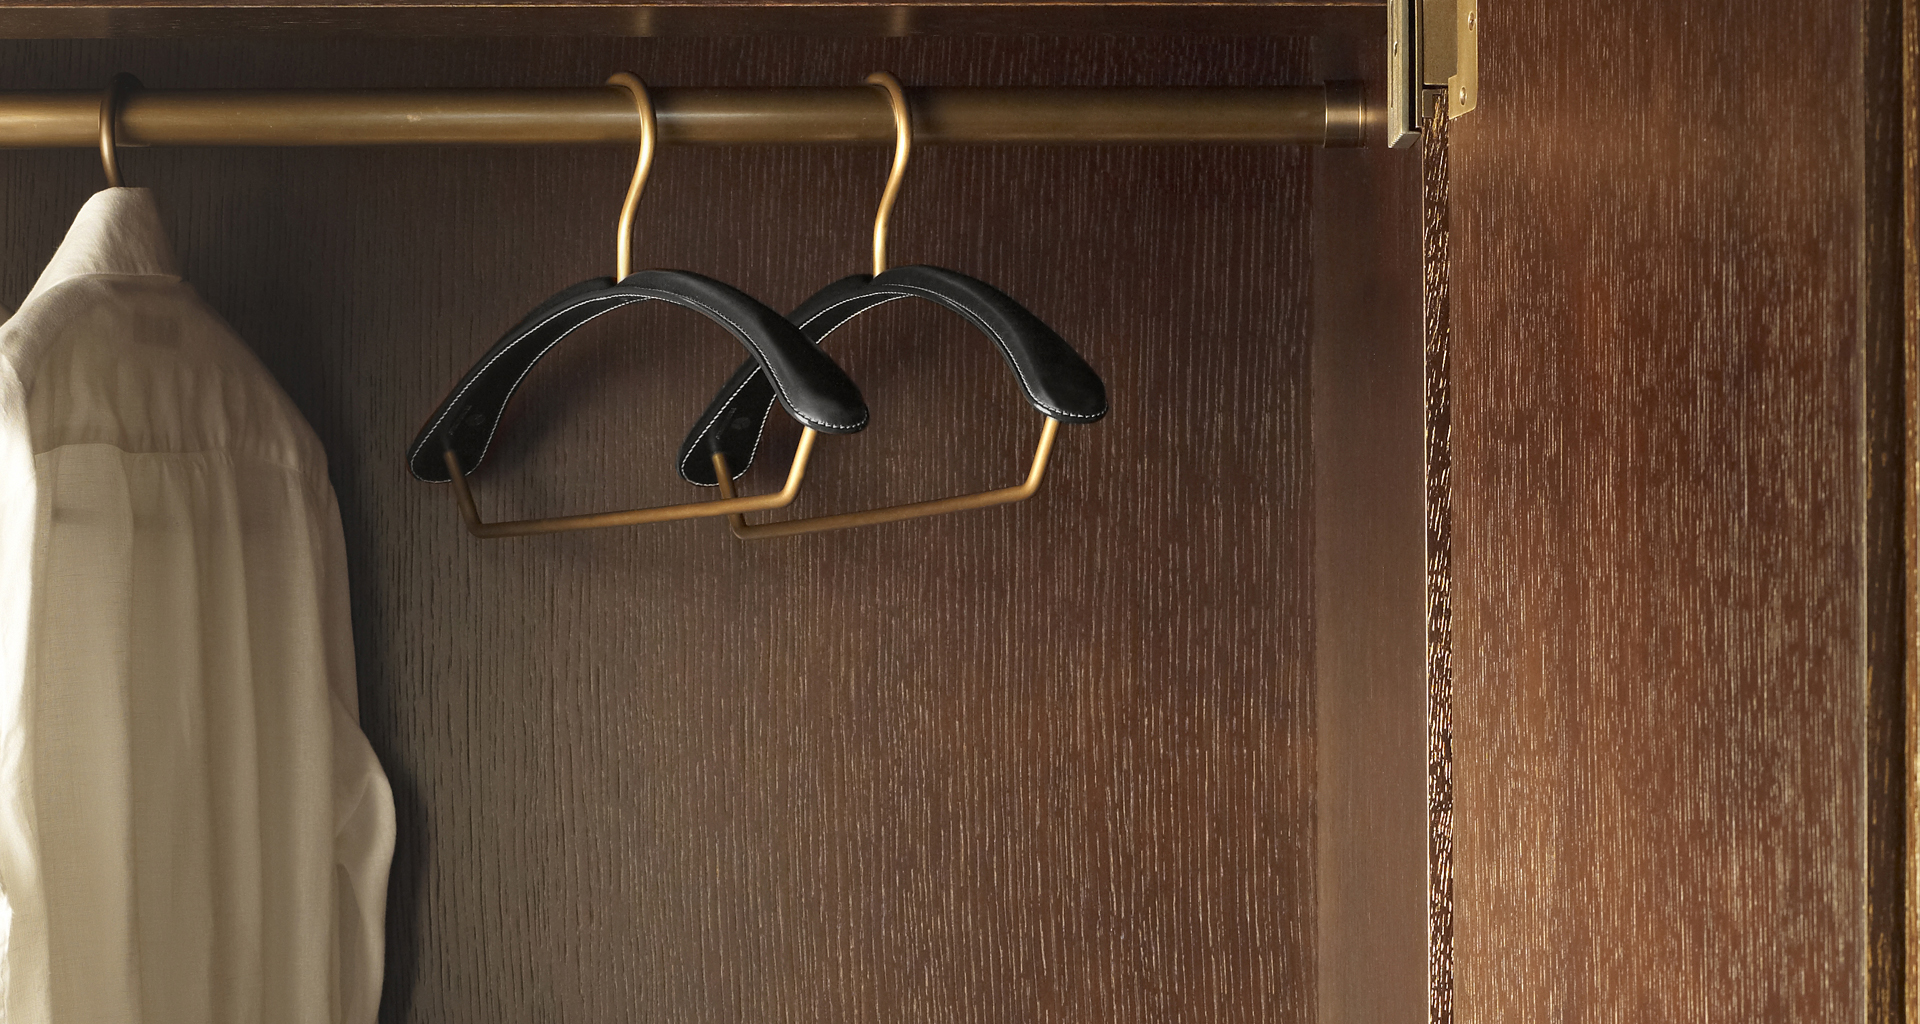 Gruccia is a leather and bronze wardrobe hanger, from Promemoria's catalogue | Promemoria